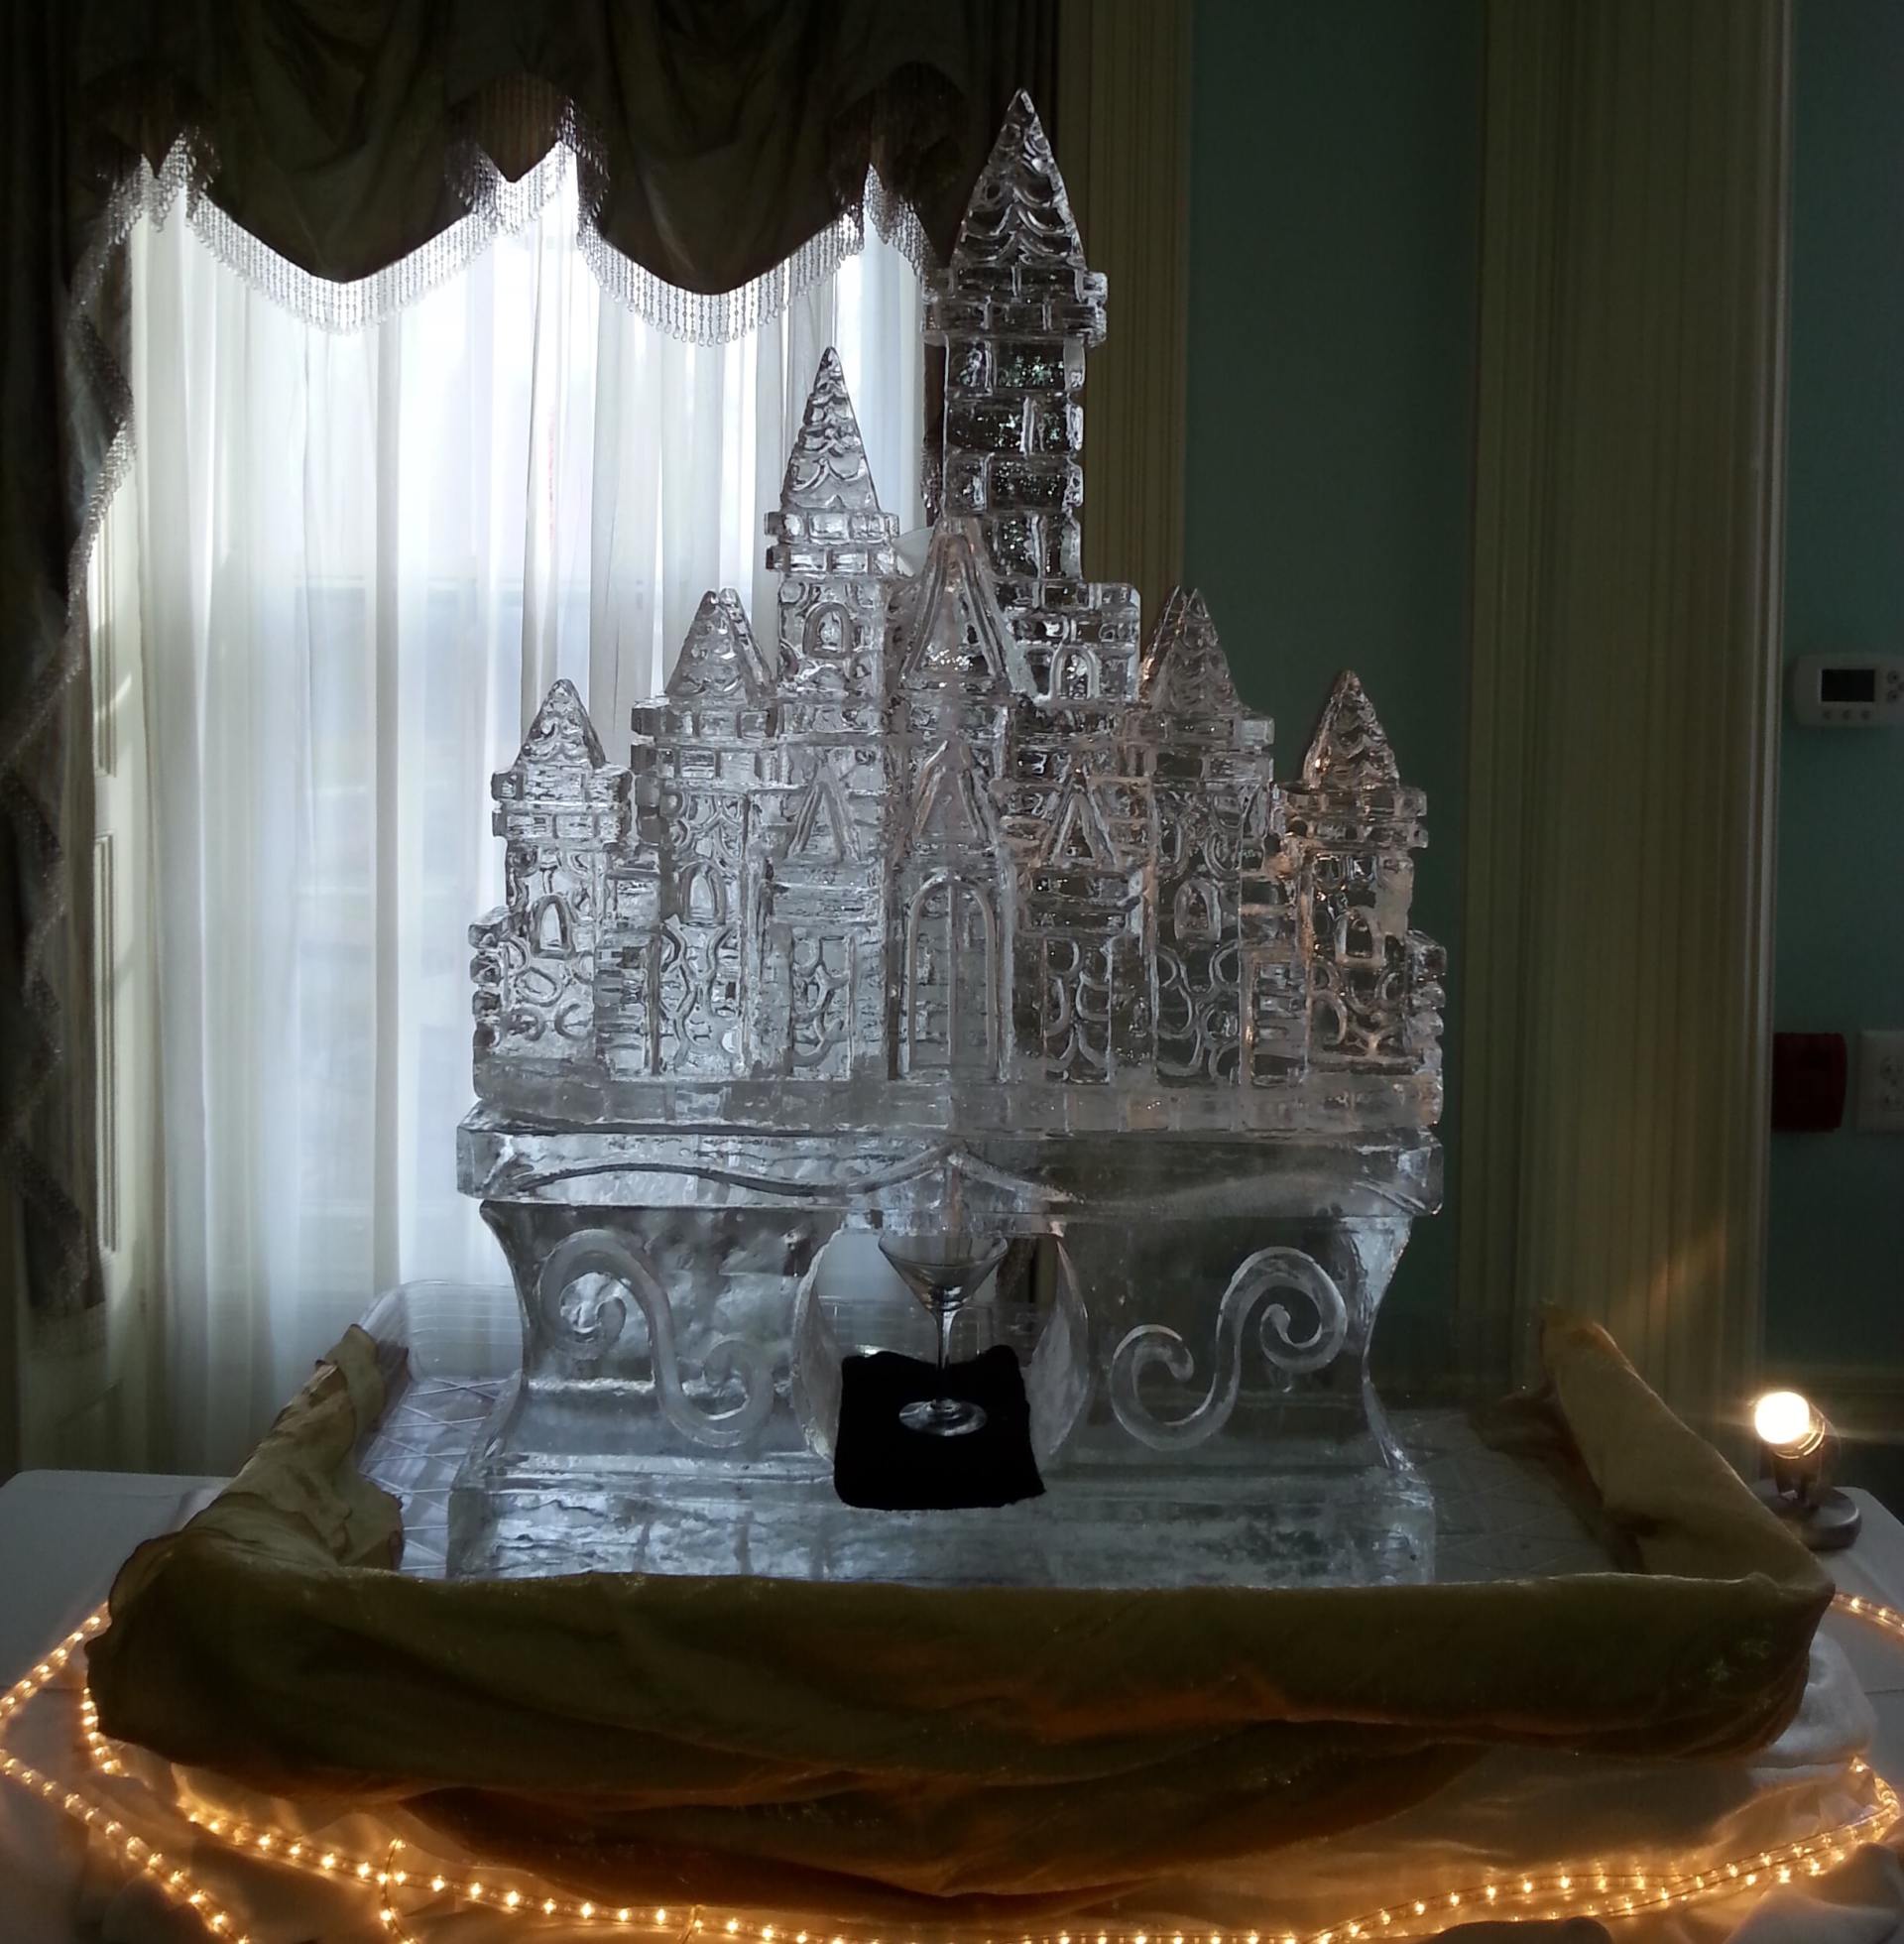 Cinderella castle ice luge Display Philadelphia PA